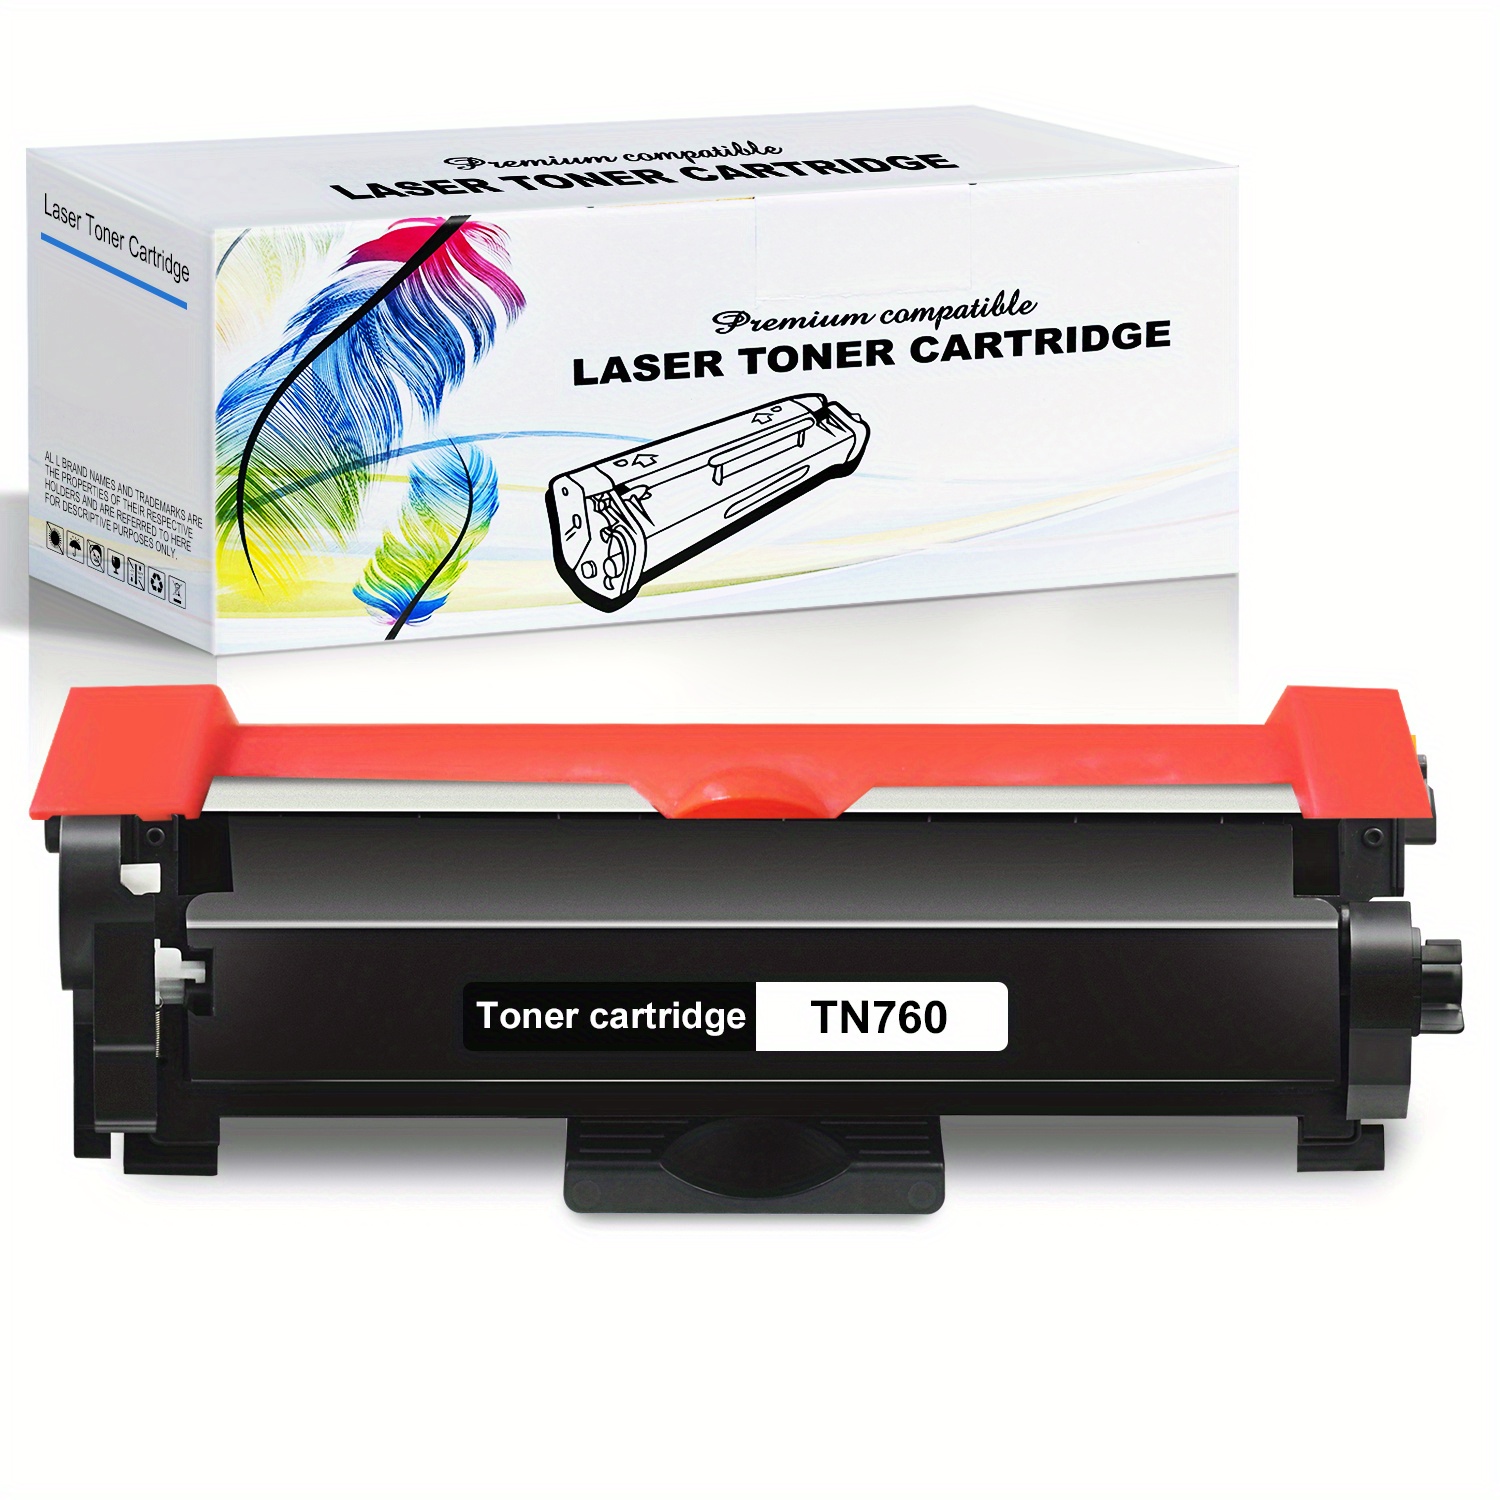 Tn760 Tn 760 Tn730 Tn 730 Toner For Brother Printer - Temu United Kingdom